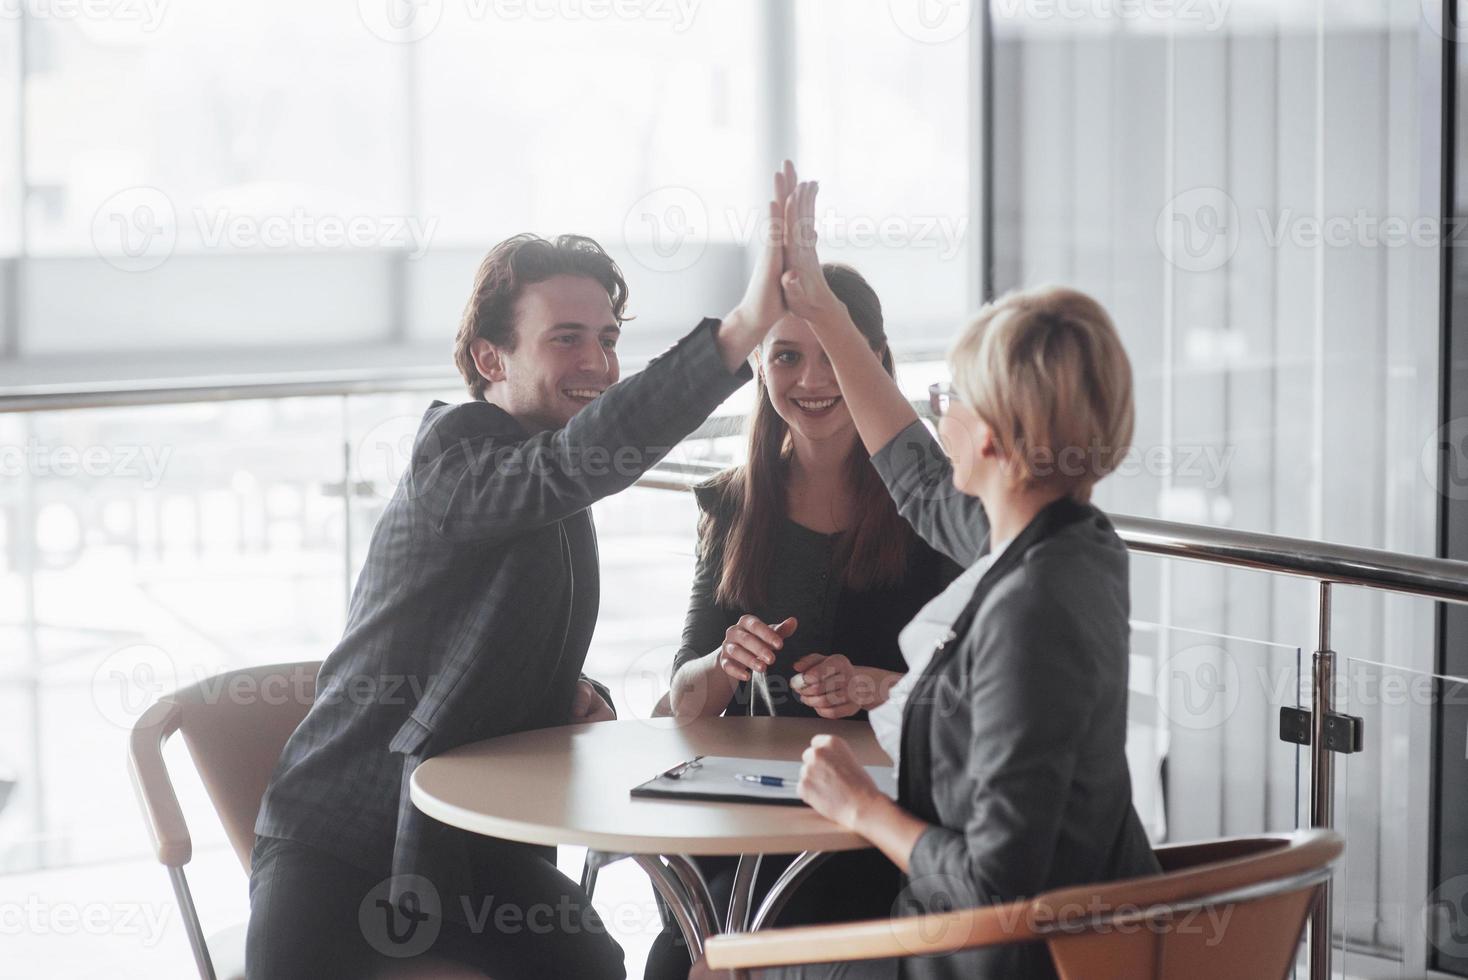 equipe de negócios de sucesso feliz dando um gesto de "high fives" enquanto riem e aplaudem seu sucesso foto